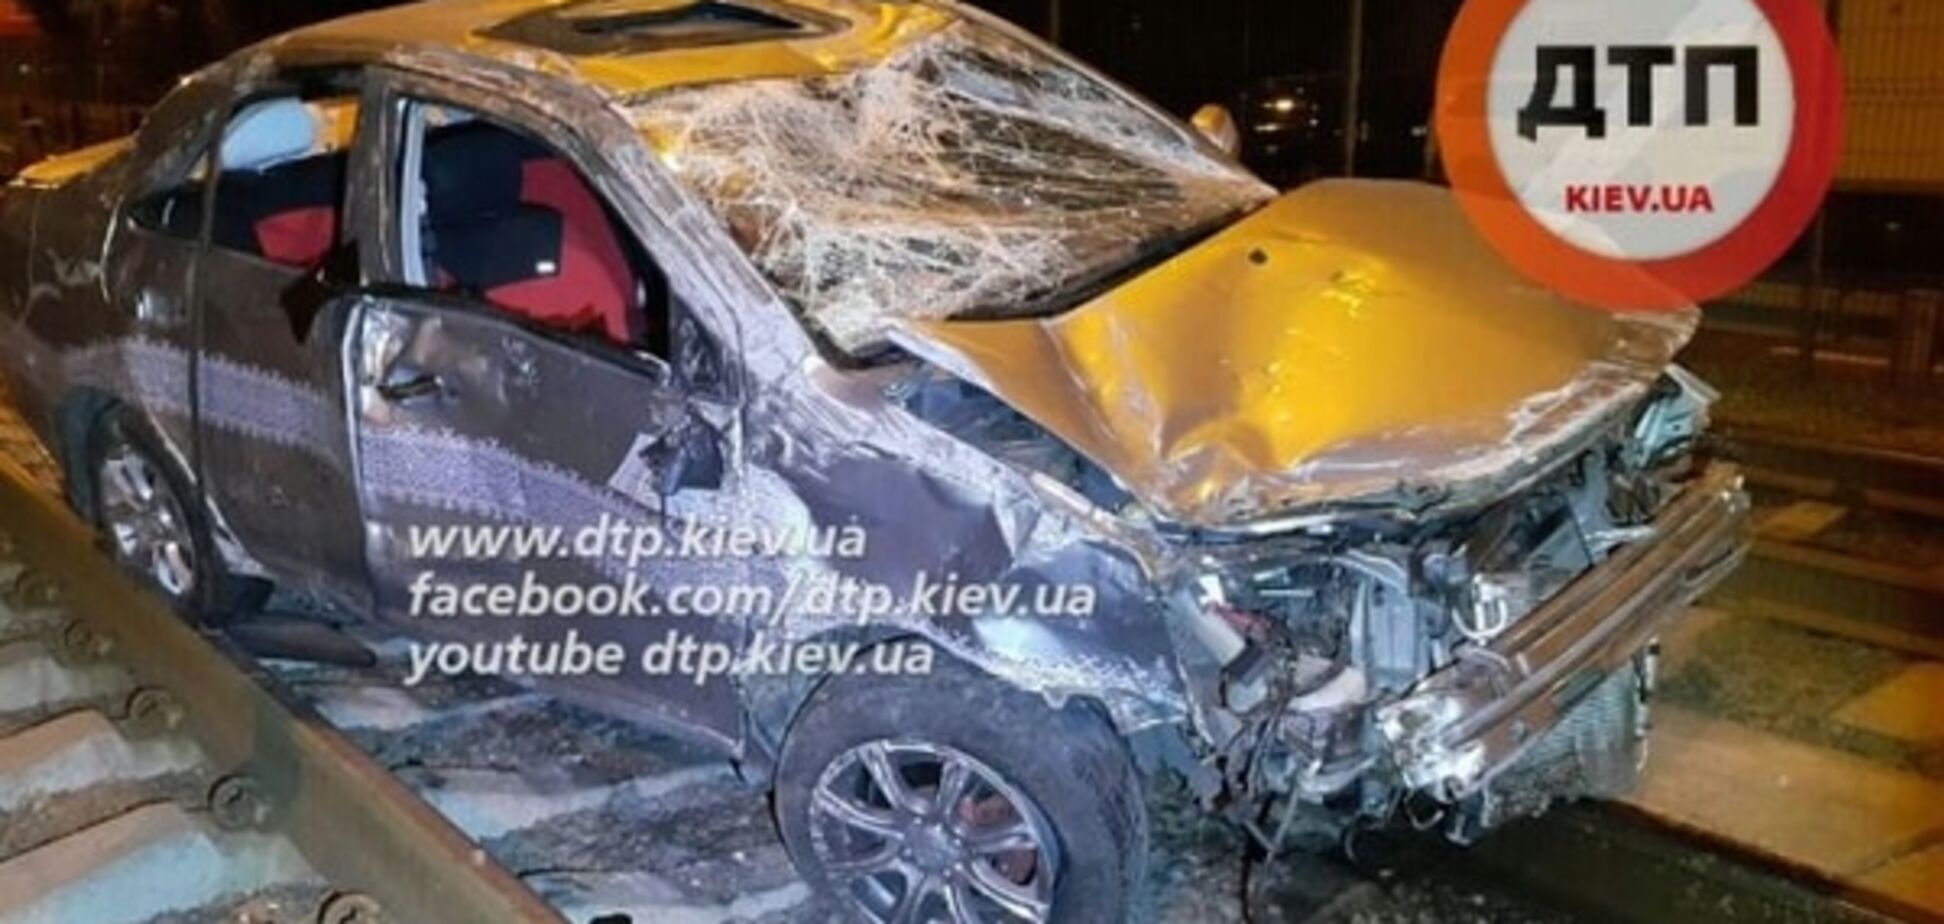 В Киеве пьяный водитель пролетел по рельсам трамвая: есть пострадавшие